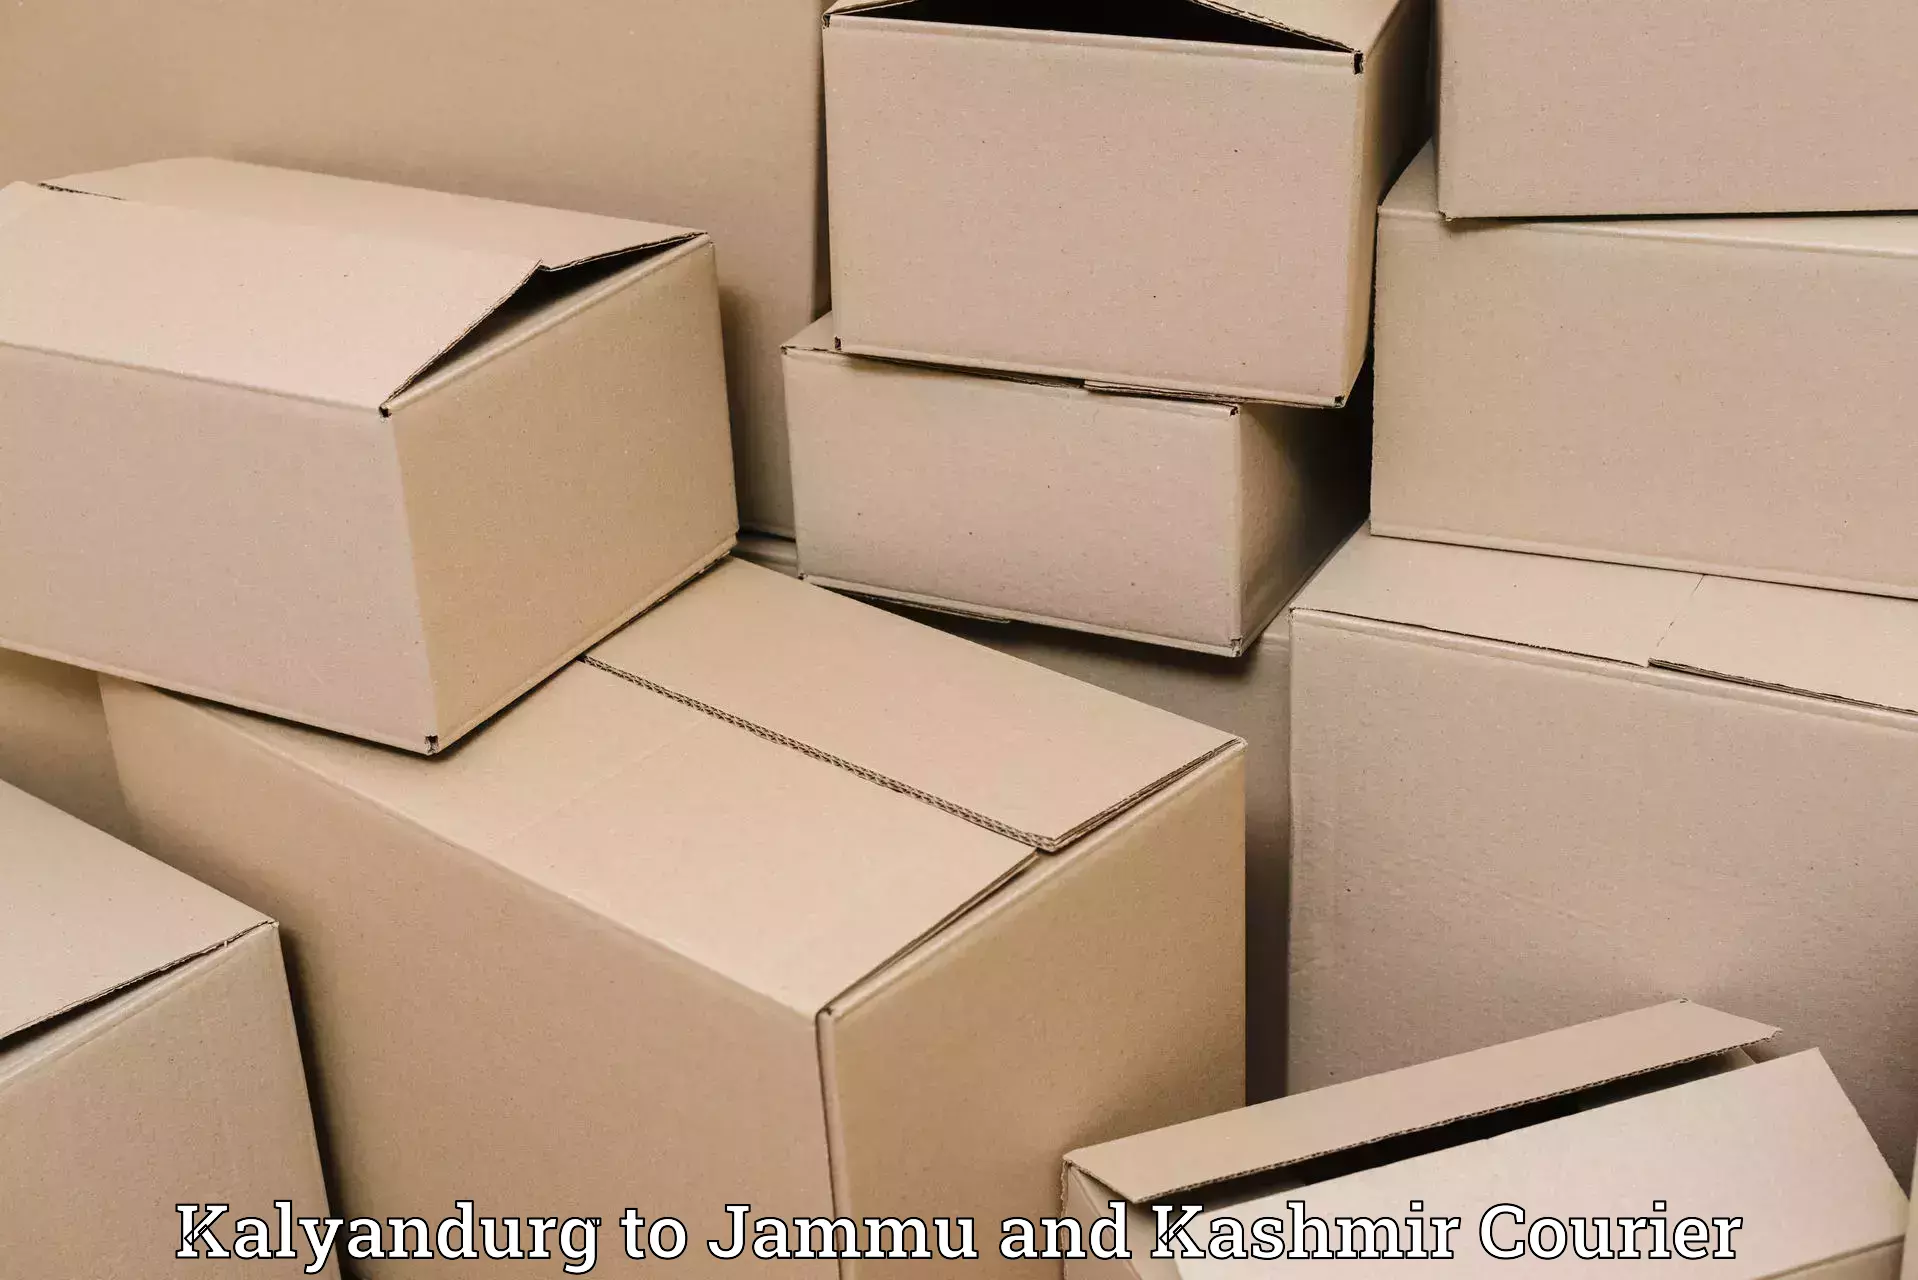 High-speed parcel service Kalyandurg to Rajouri